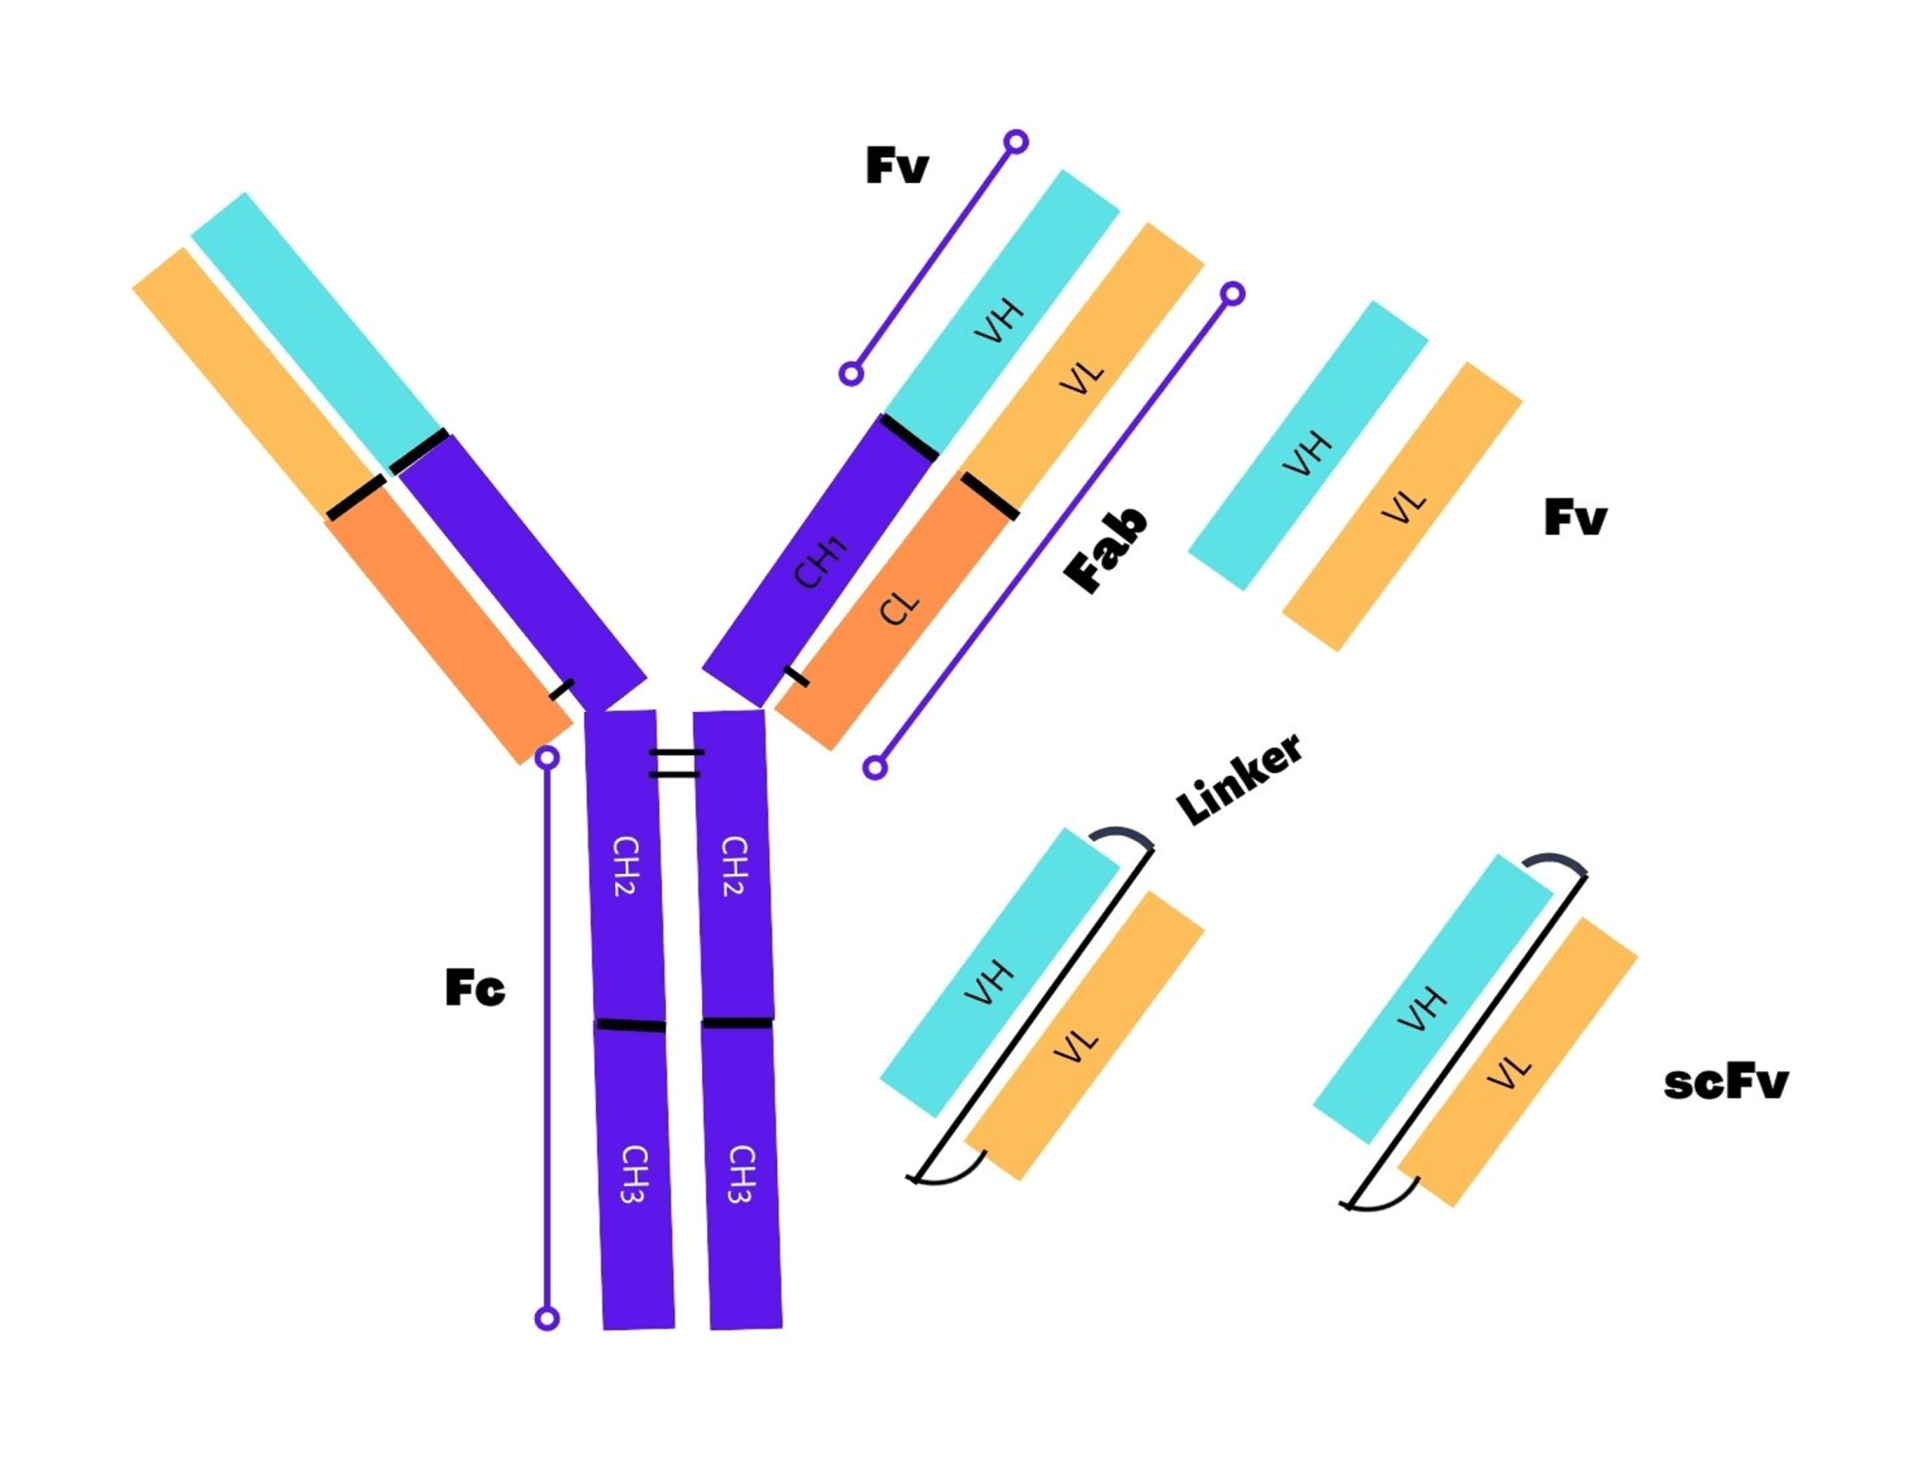 Figure 1. Representative scheme showing scFv fragment formation